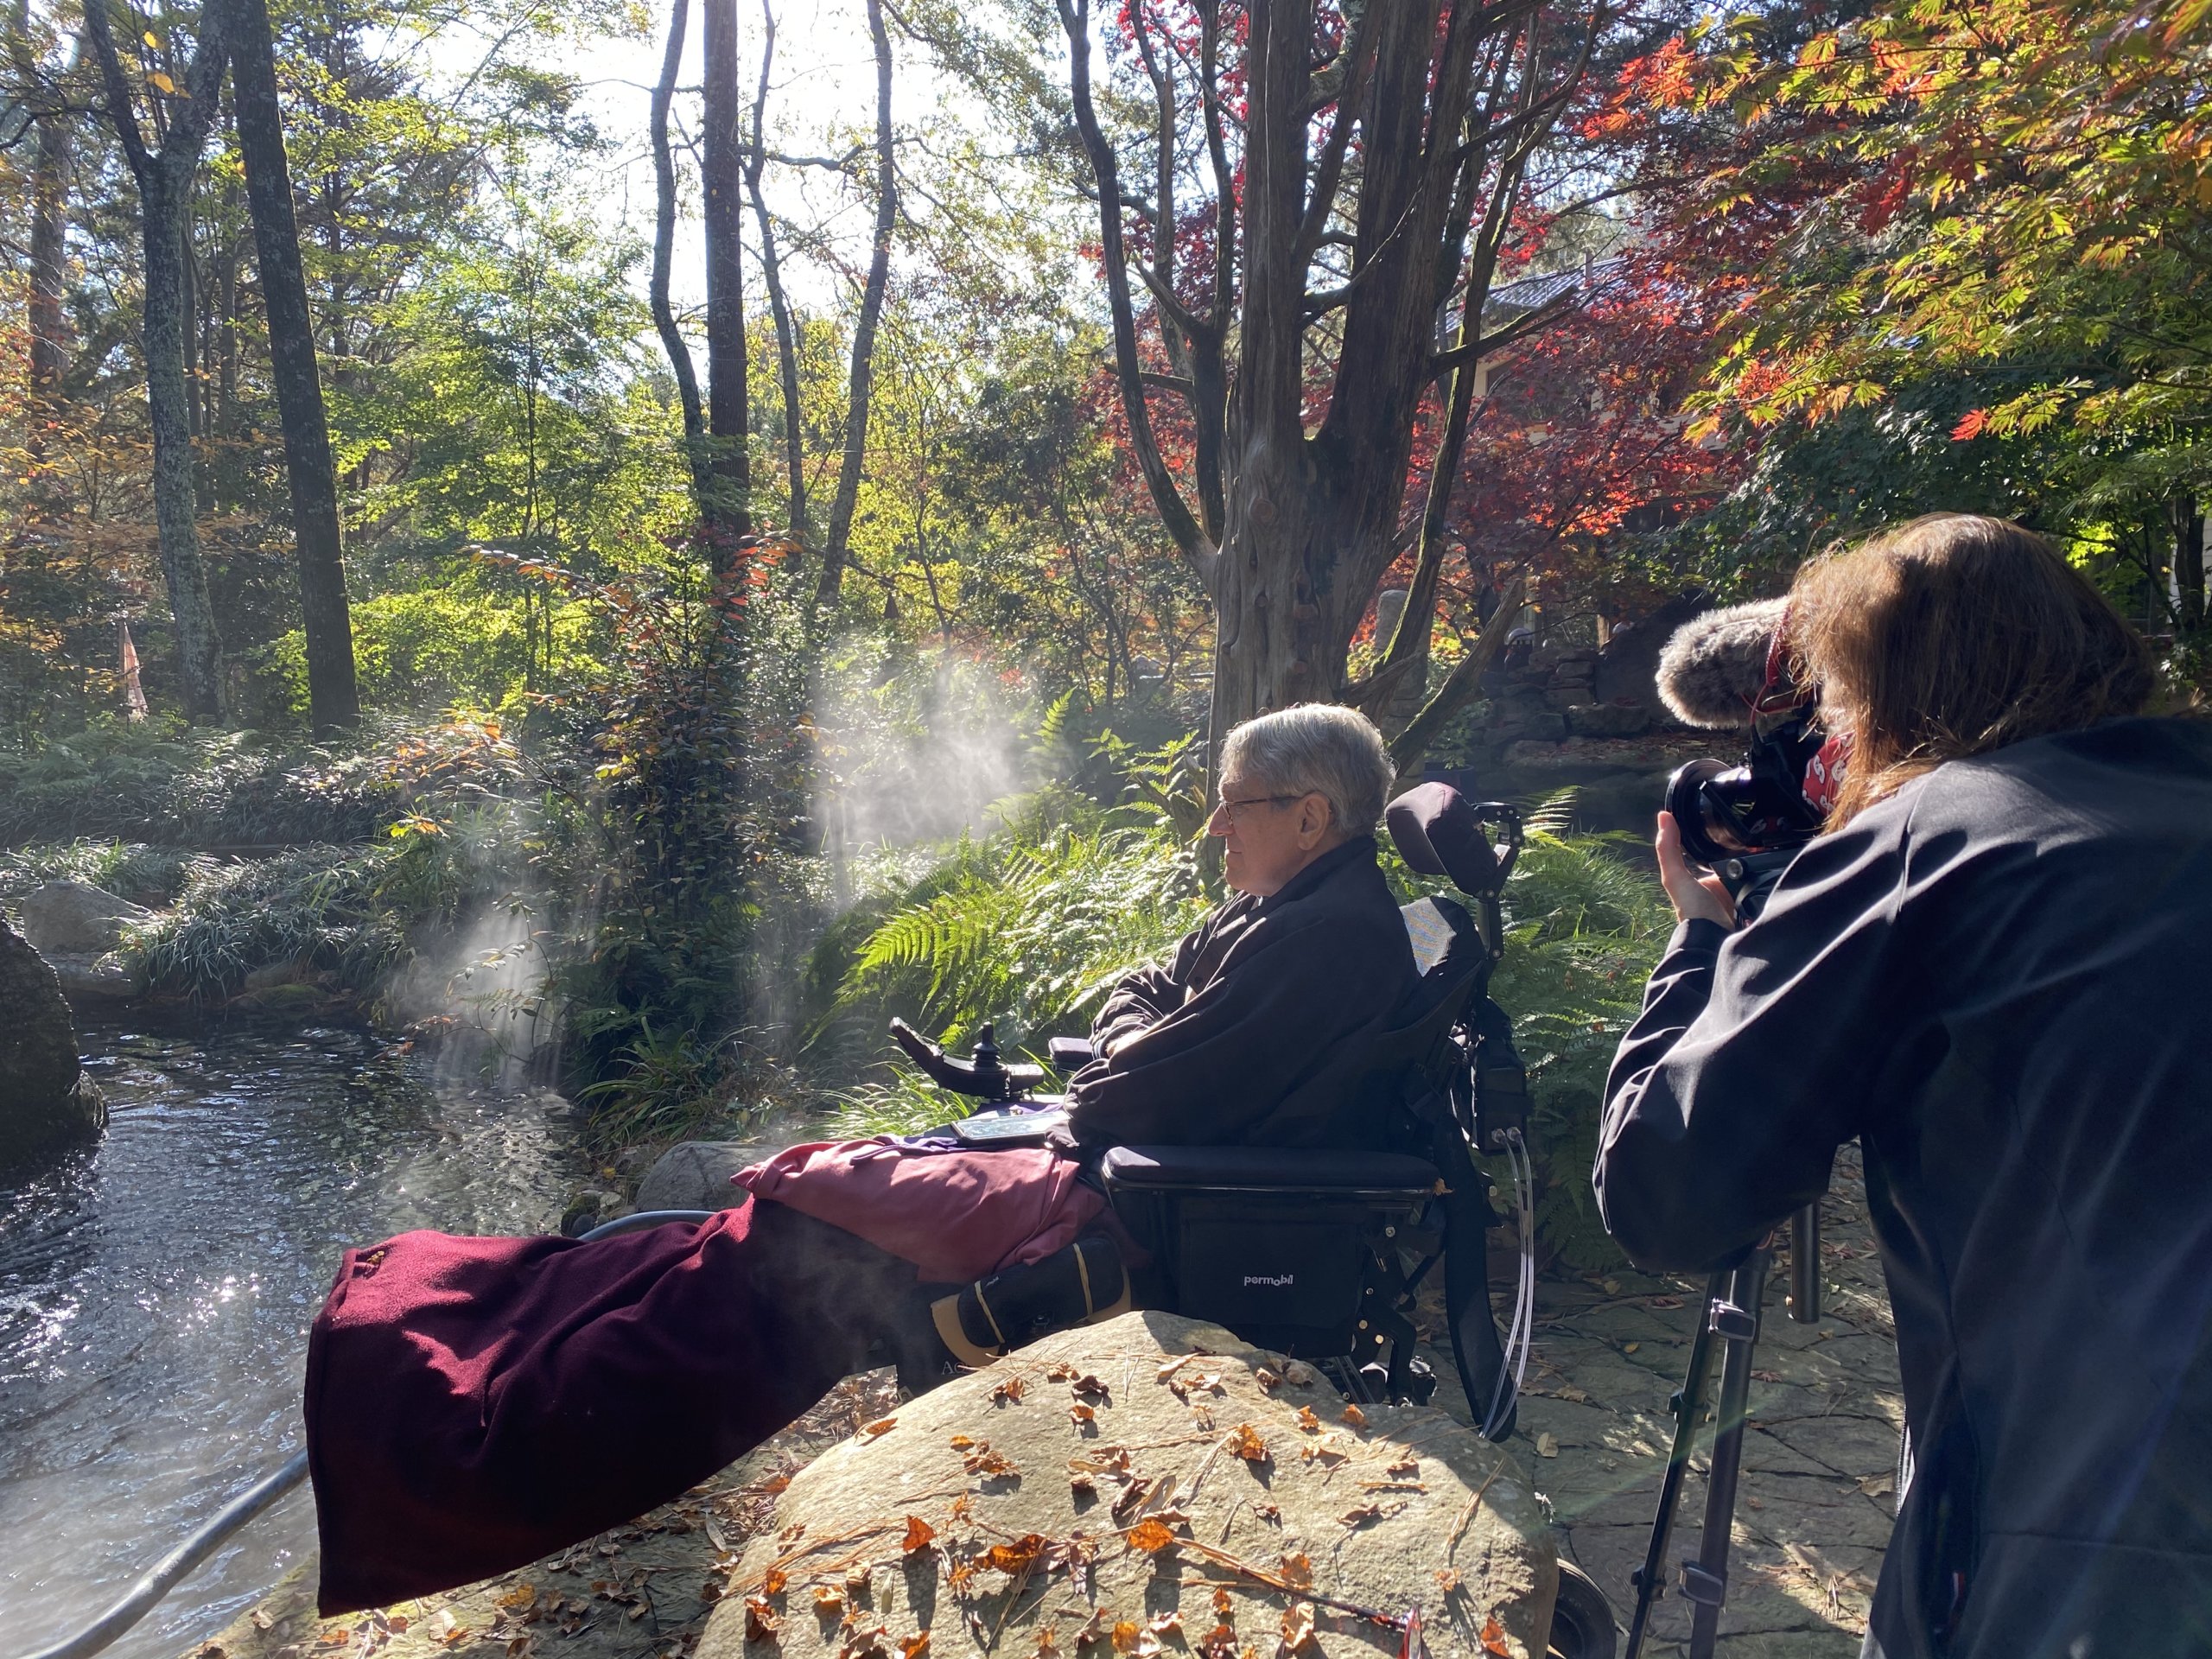 Dan Krebill in his garden with videographer Simone Keith